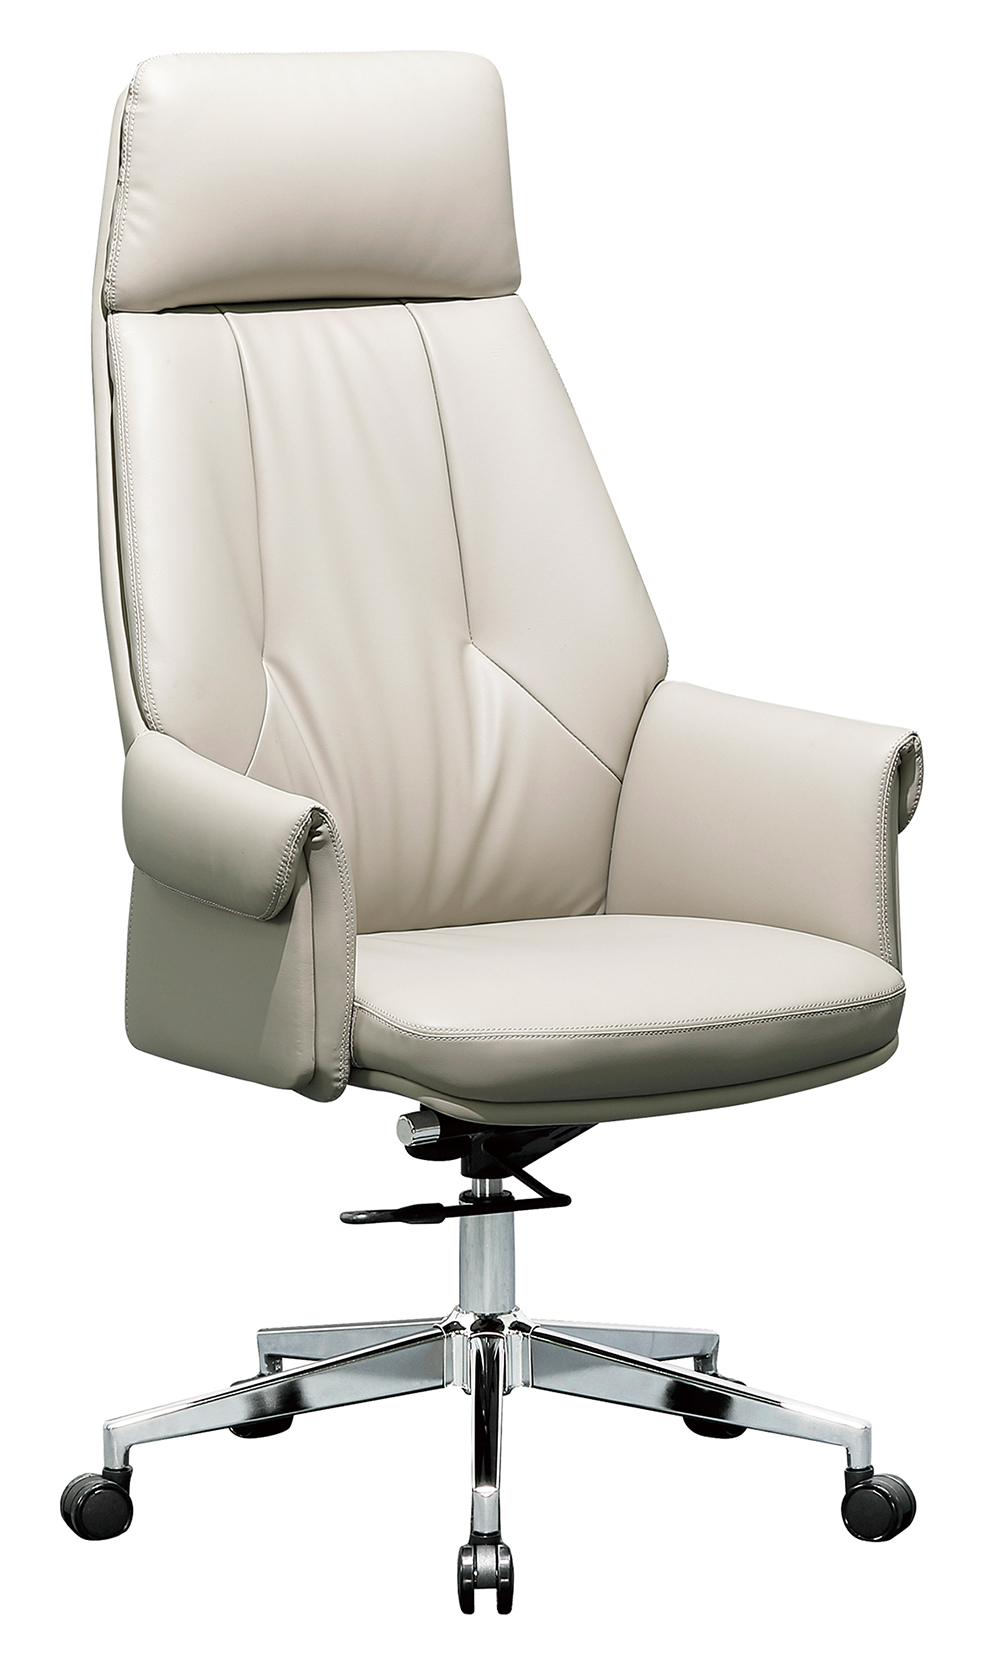 GS6036班椅